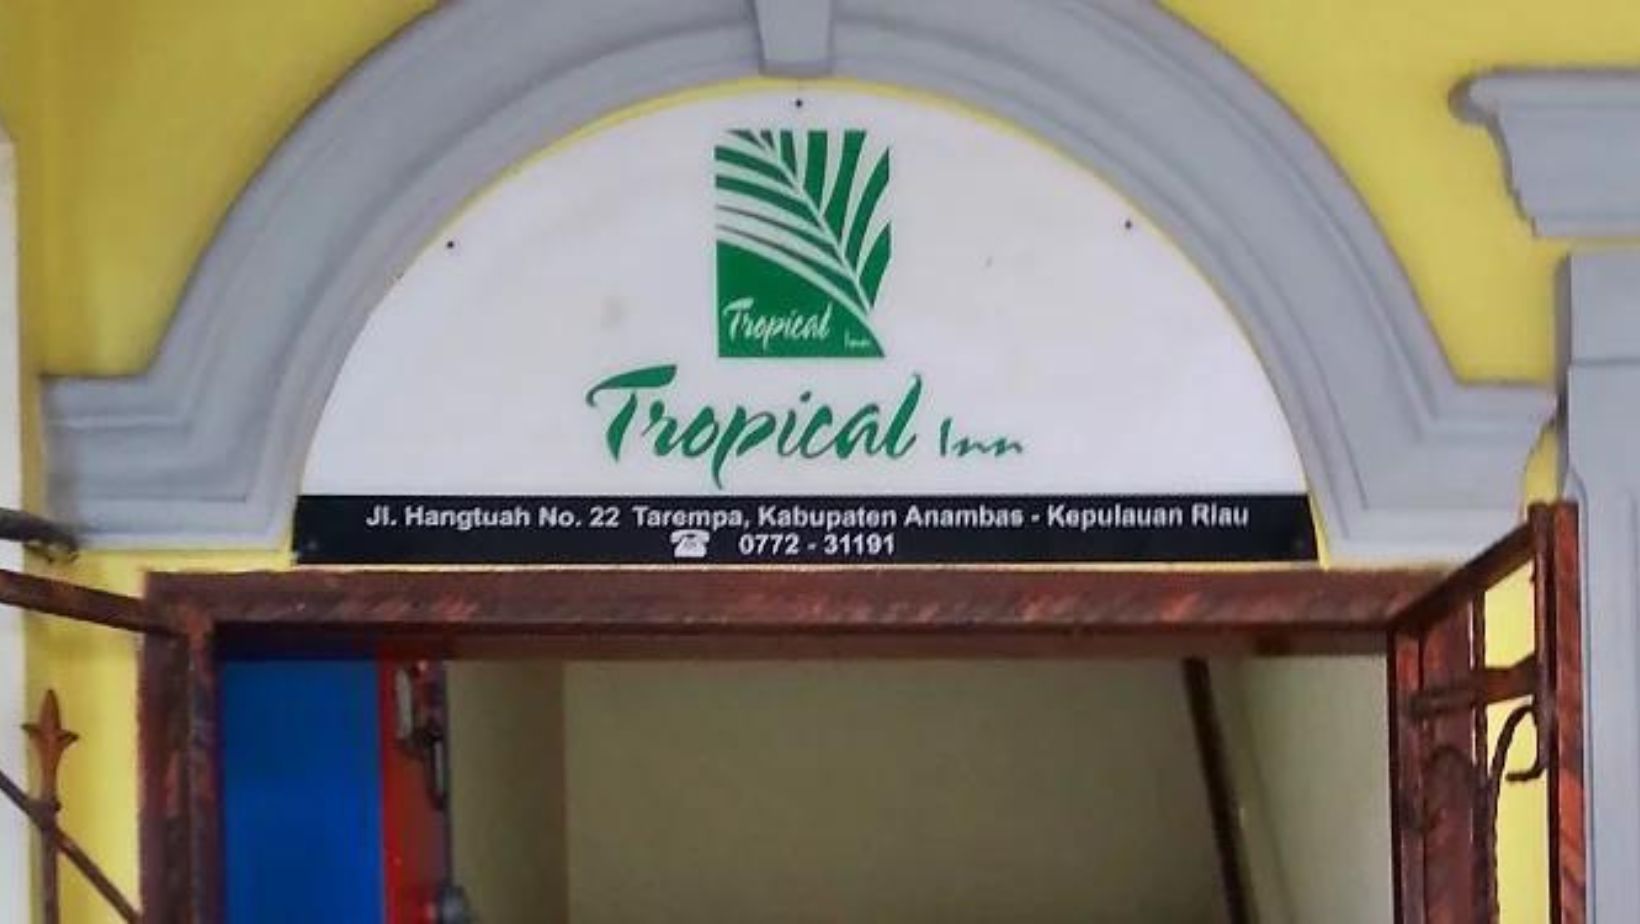 Hotel Tropical Inn menawarkan akomodasi nyaman dengan harga terjangkau